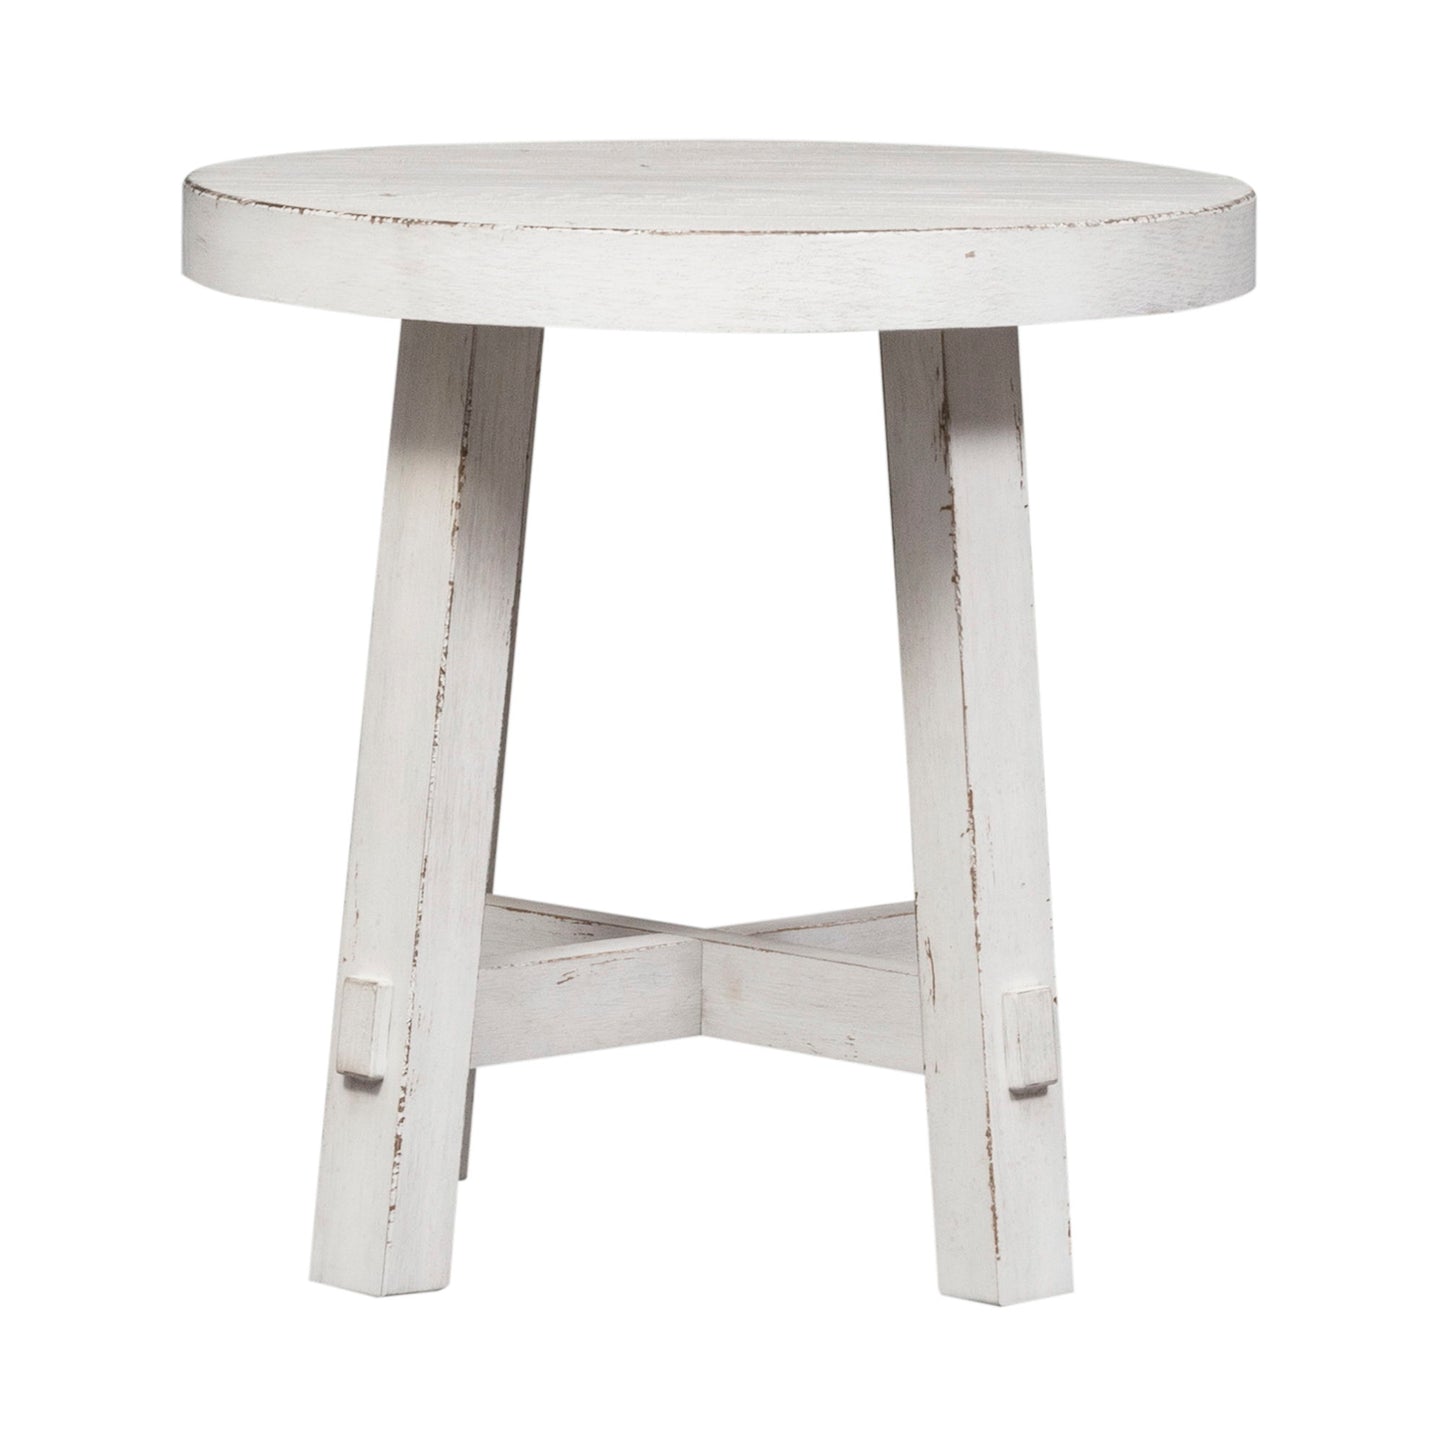 Modern Farmhouse - Splay Leg Round End Table - White